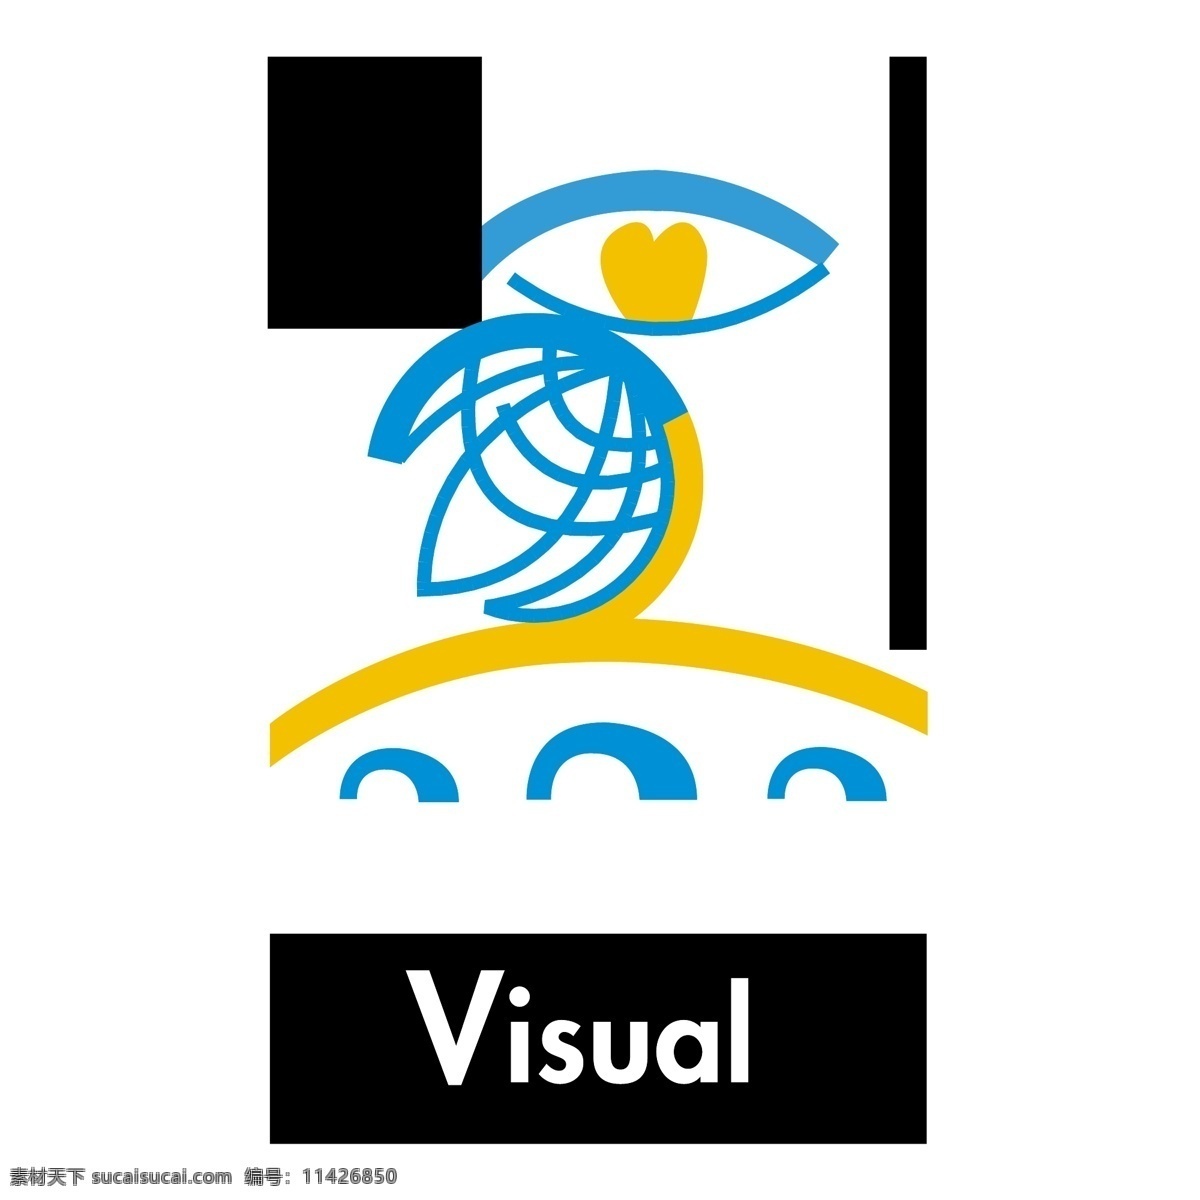 视觉0 可见 企业视觉识别 视觉传达 视觉 载体 形象 文具 视觉识别 效果 视觉识别自由 visual basic 标志 矢量 音频视觉标志 矢量图 建筑家居